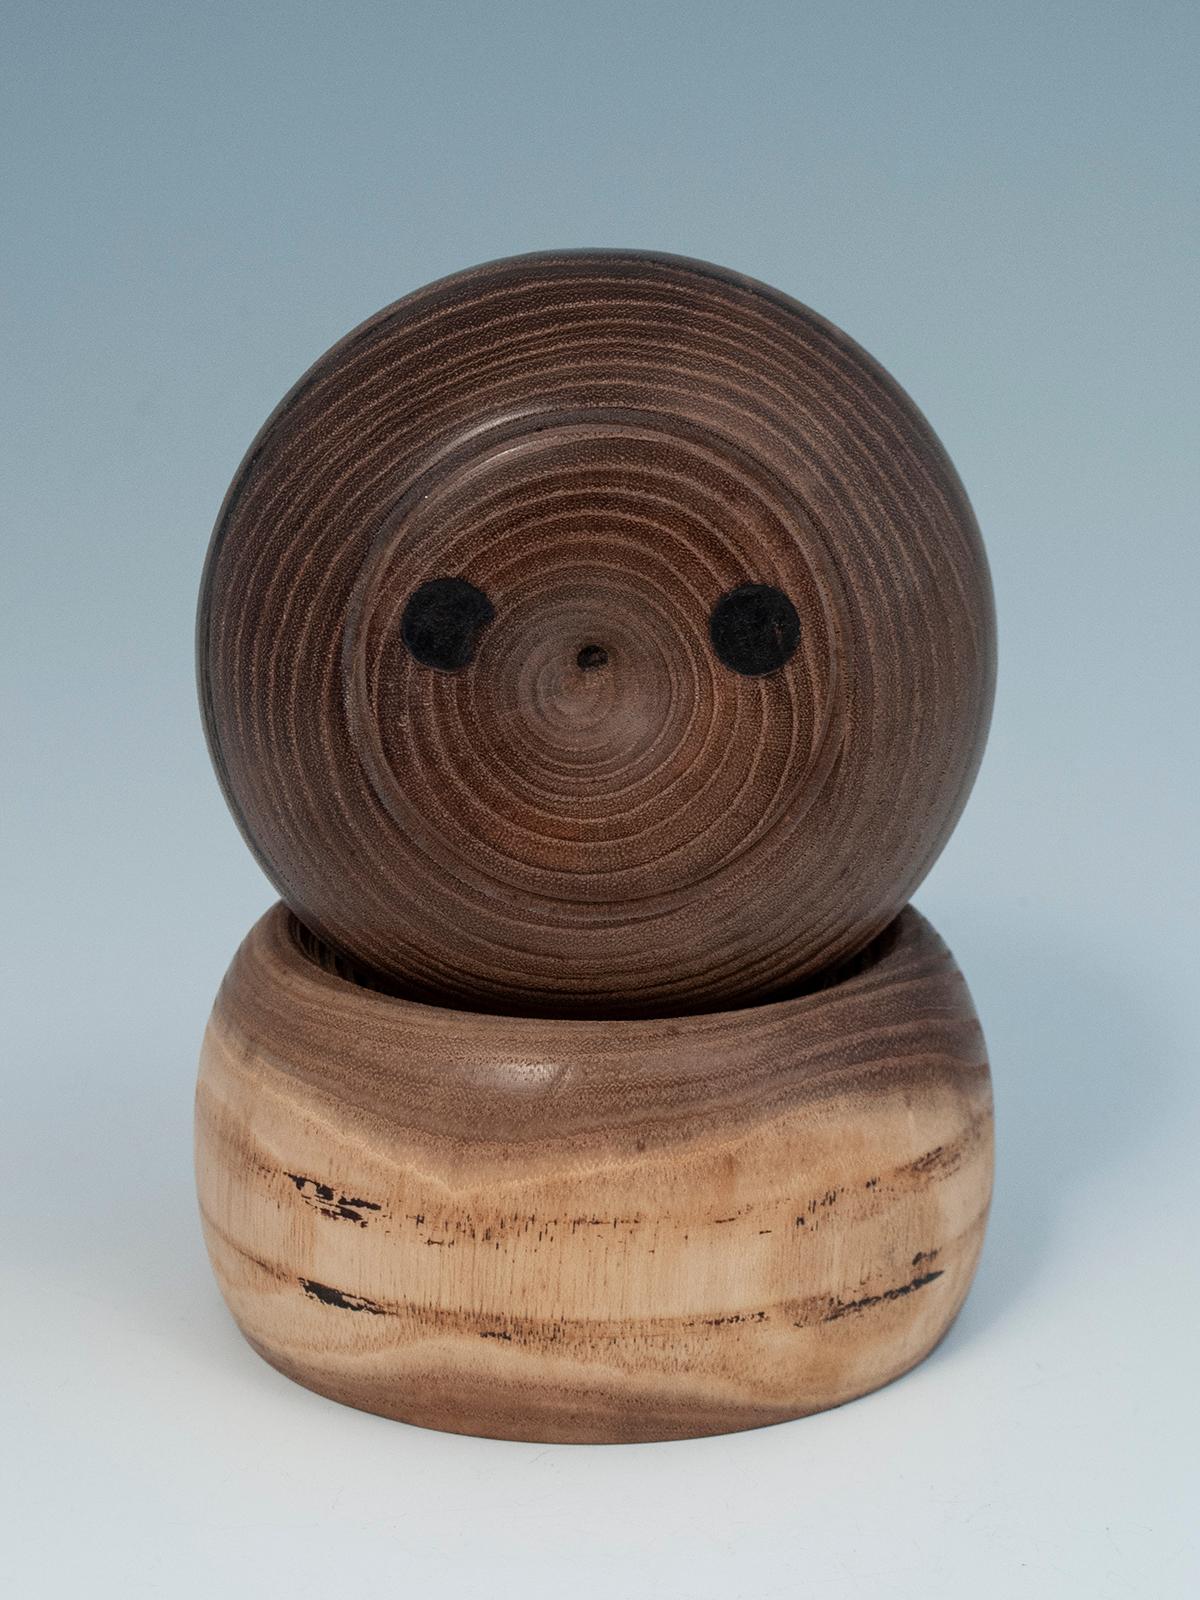 Seltene moderne kreative Kokeshi-Puppe von Hideo Ishihara, Japan

Dieses seltene, skurrile Sosaku-Kokeshi wurde von dem preisgekrönten Meister Hideo Ishihara (1929-1999) geschaffen und signiert. Die Augen sind aus dunklem Holz eingesetzt; die